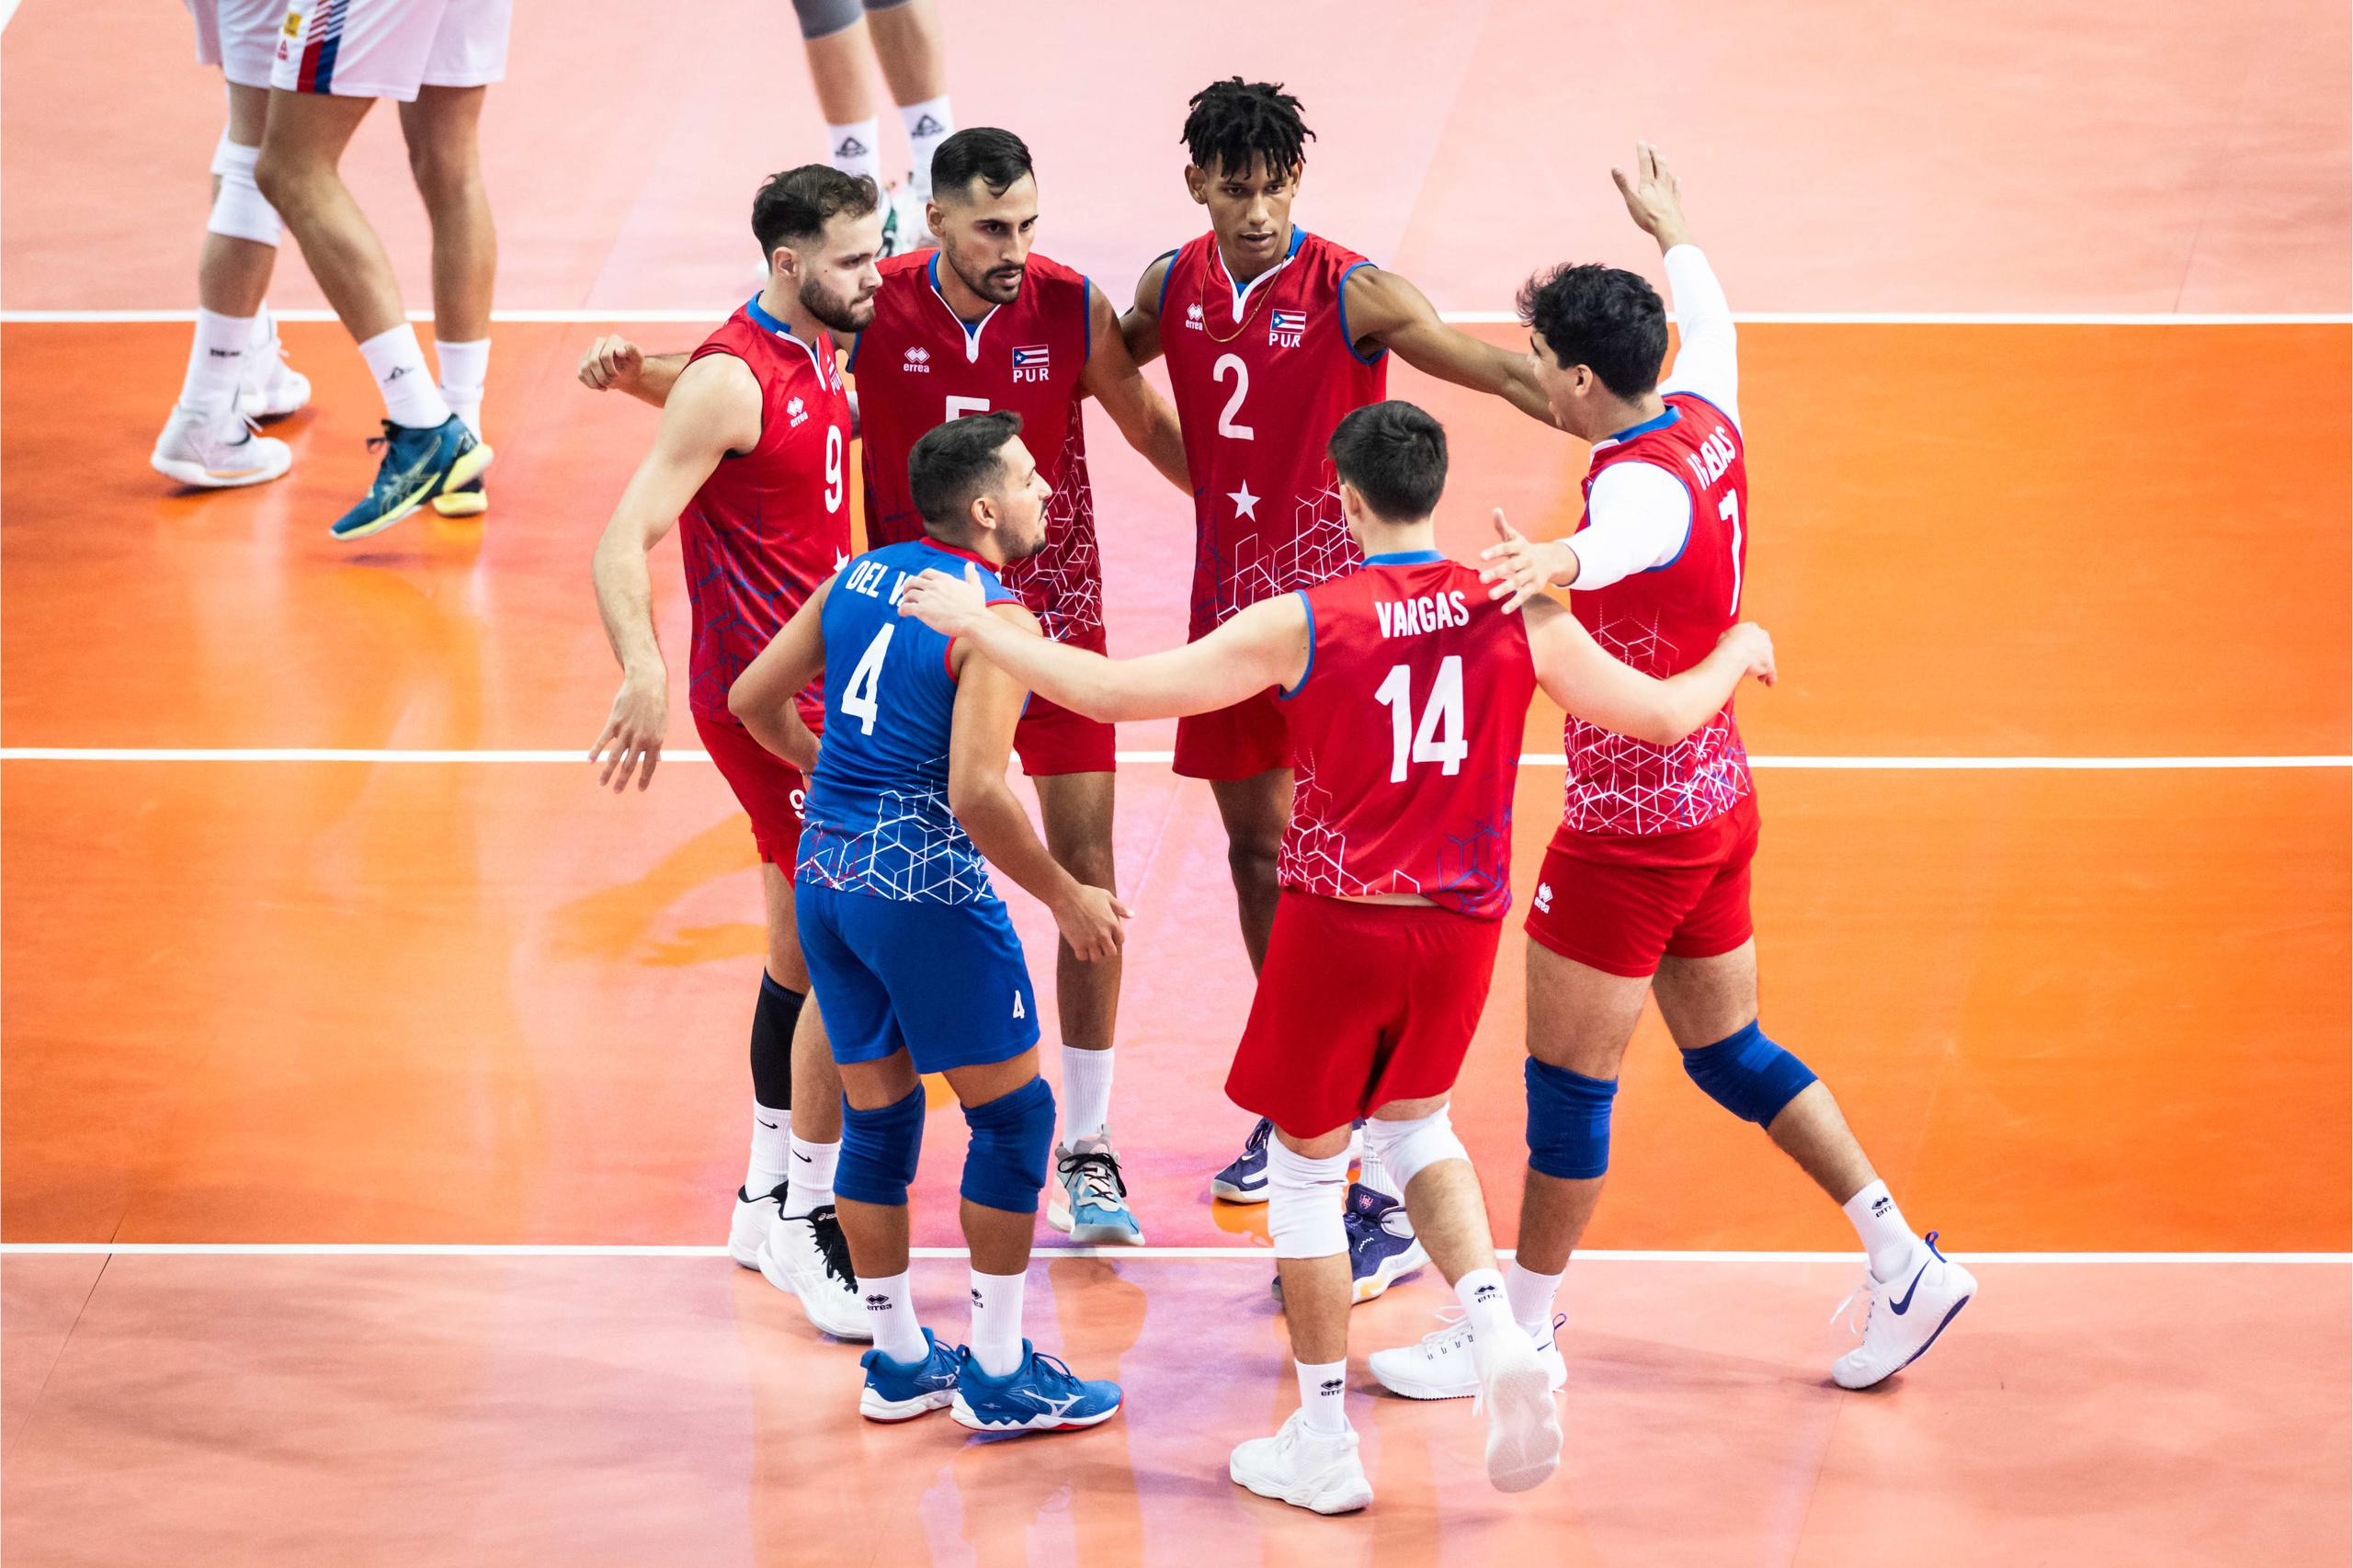 El equipo de Puerto Rico se reúne tras una jugada en su partido ante Serbia en el Mundial de Voleibol en Polonia. (FIVB)